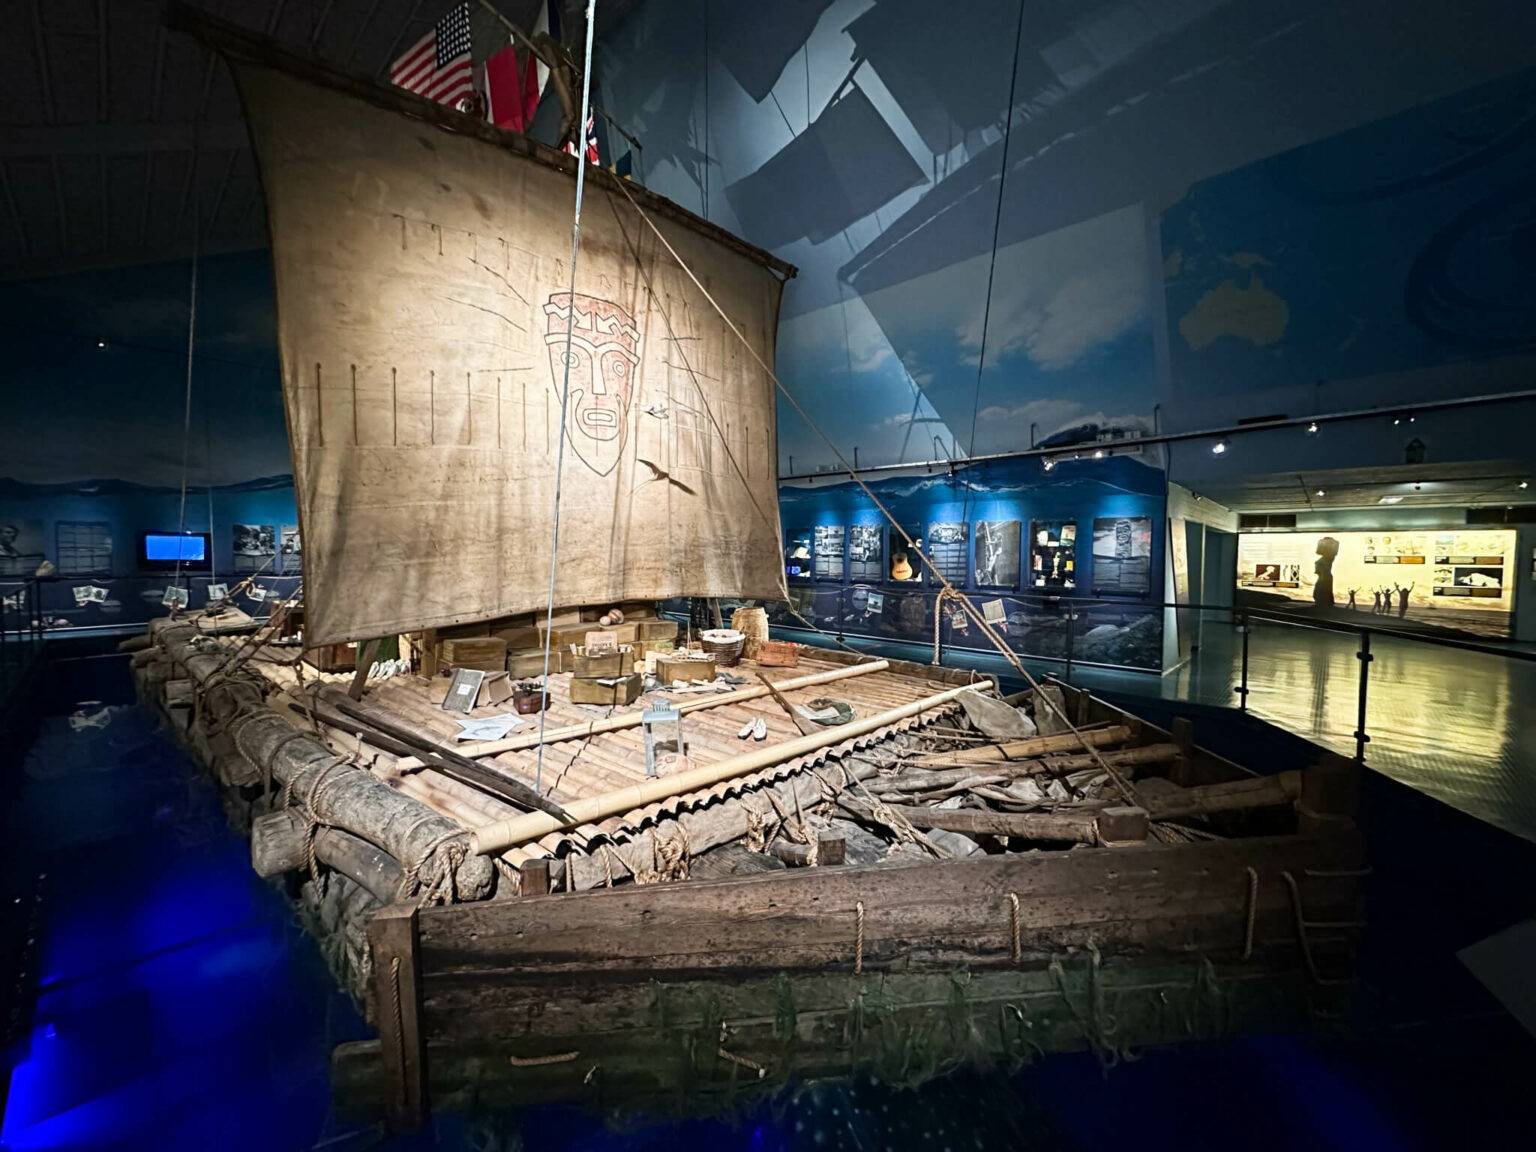 Das Kon-Tiki Museet ist nicht so bekannt wie die anderen Museen in Oslo, aber nicht weniger sehenswert.